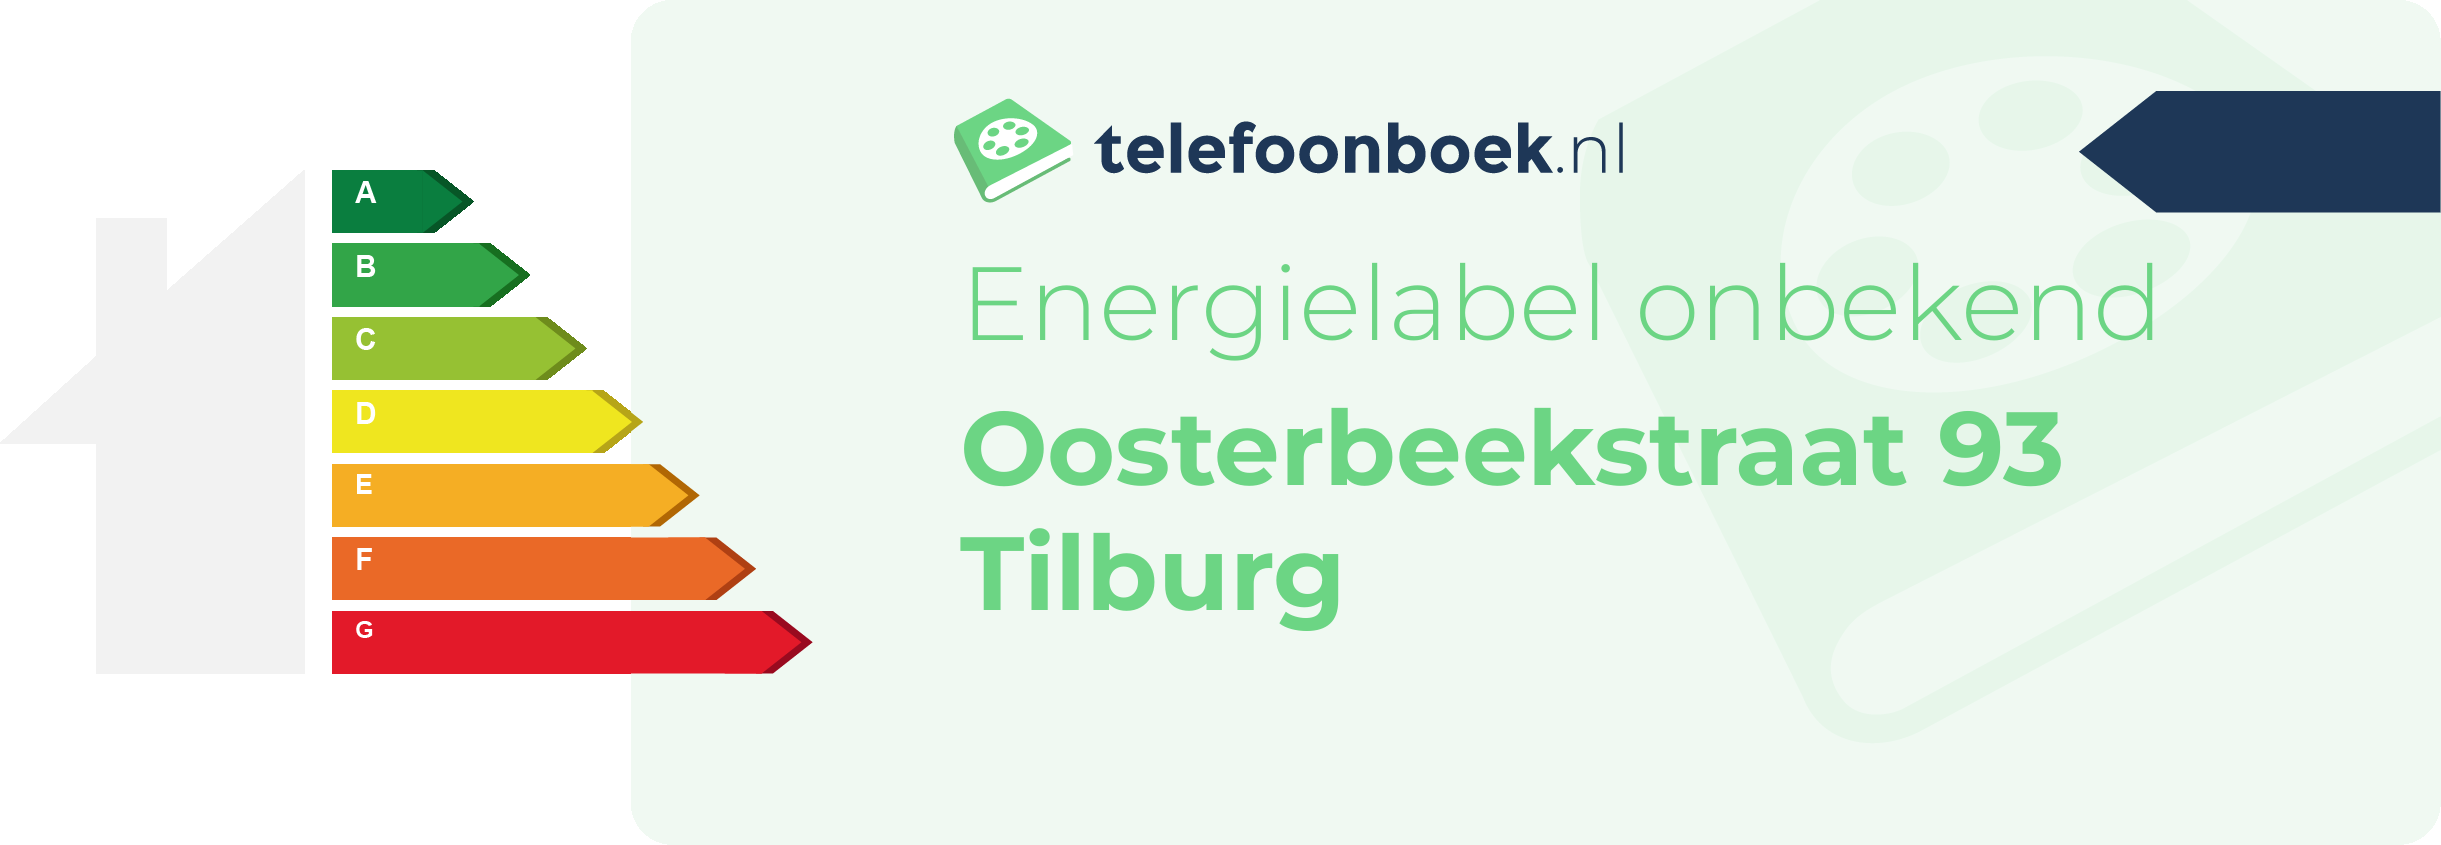 Energielabel Oosterbeekstraat 93 Tilburg